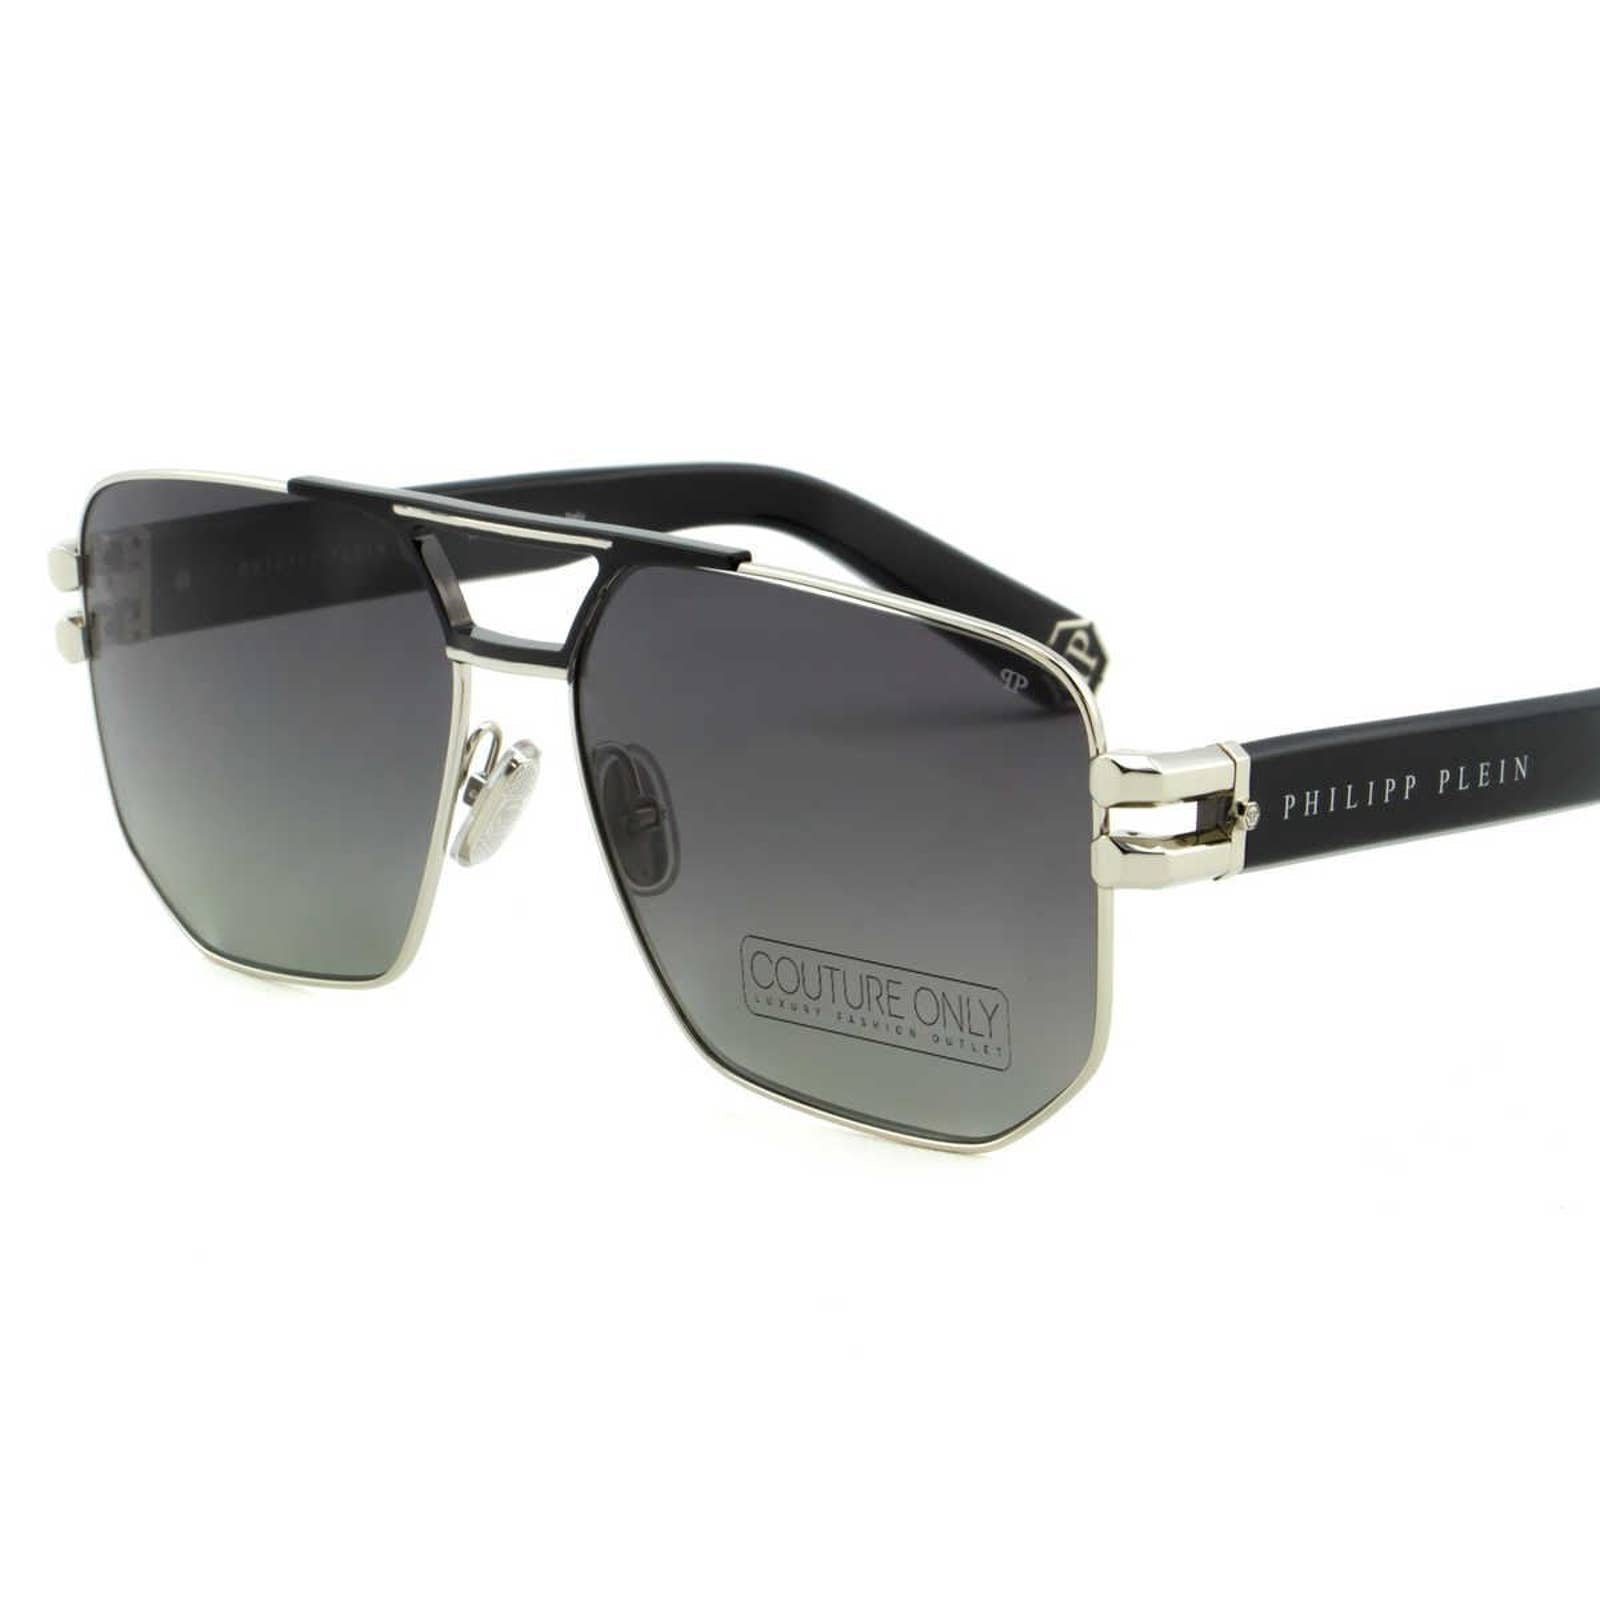 Men Black & Silver Titanium Square Sunglasses SPP012M-583P